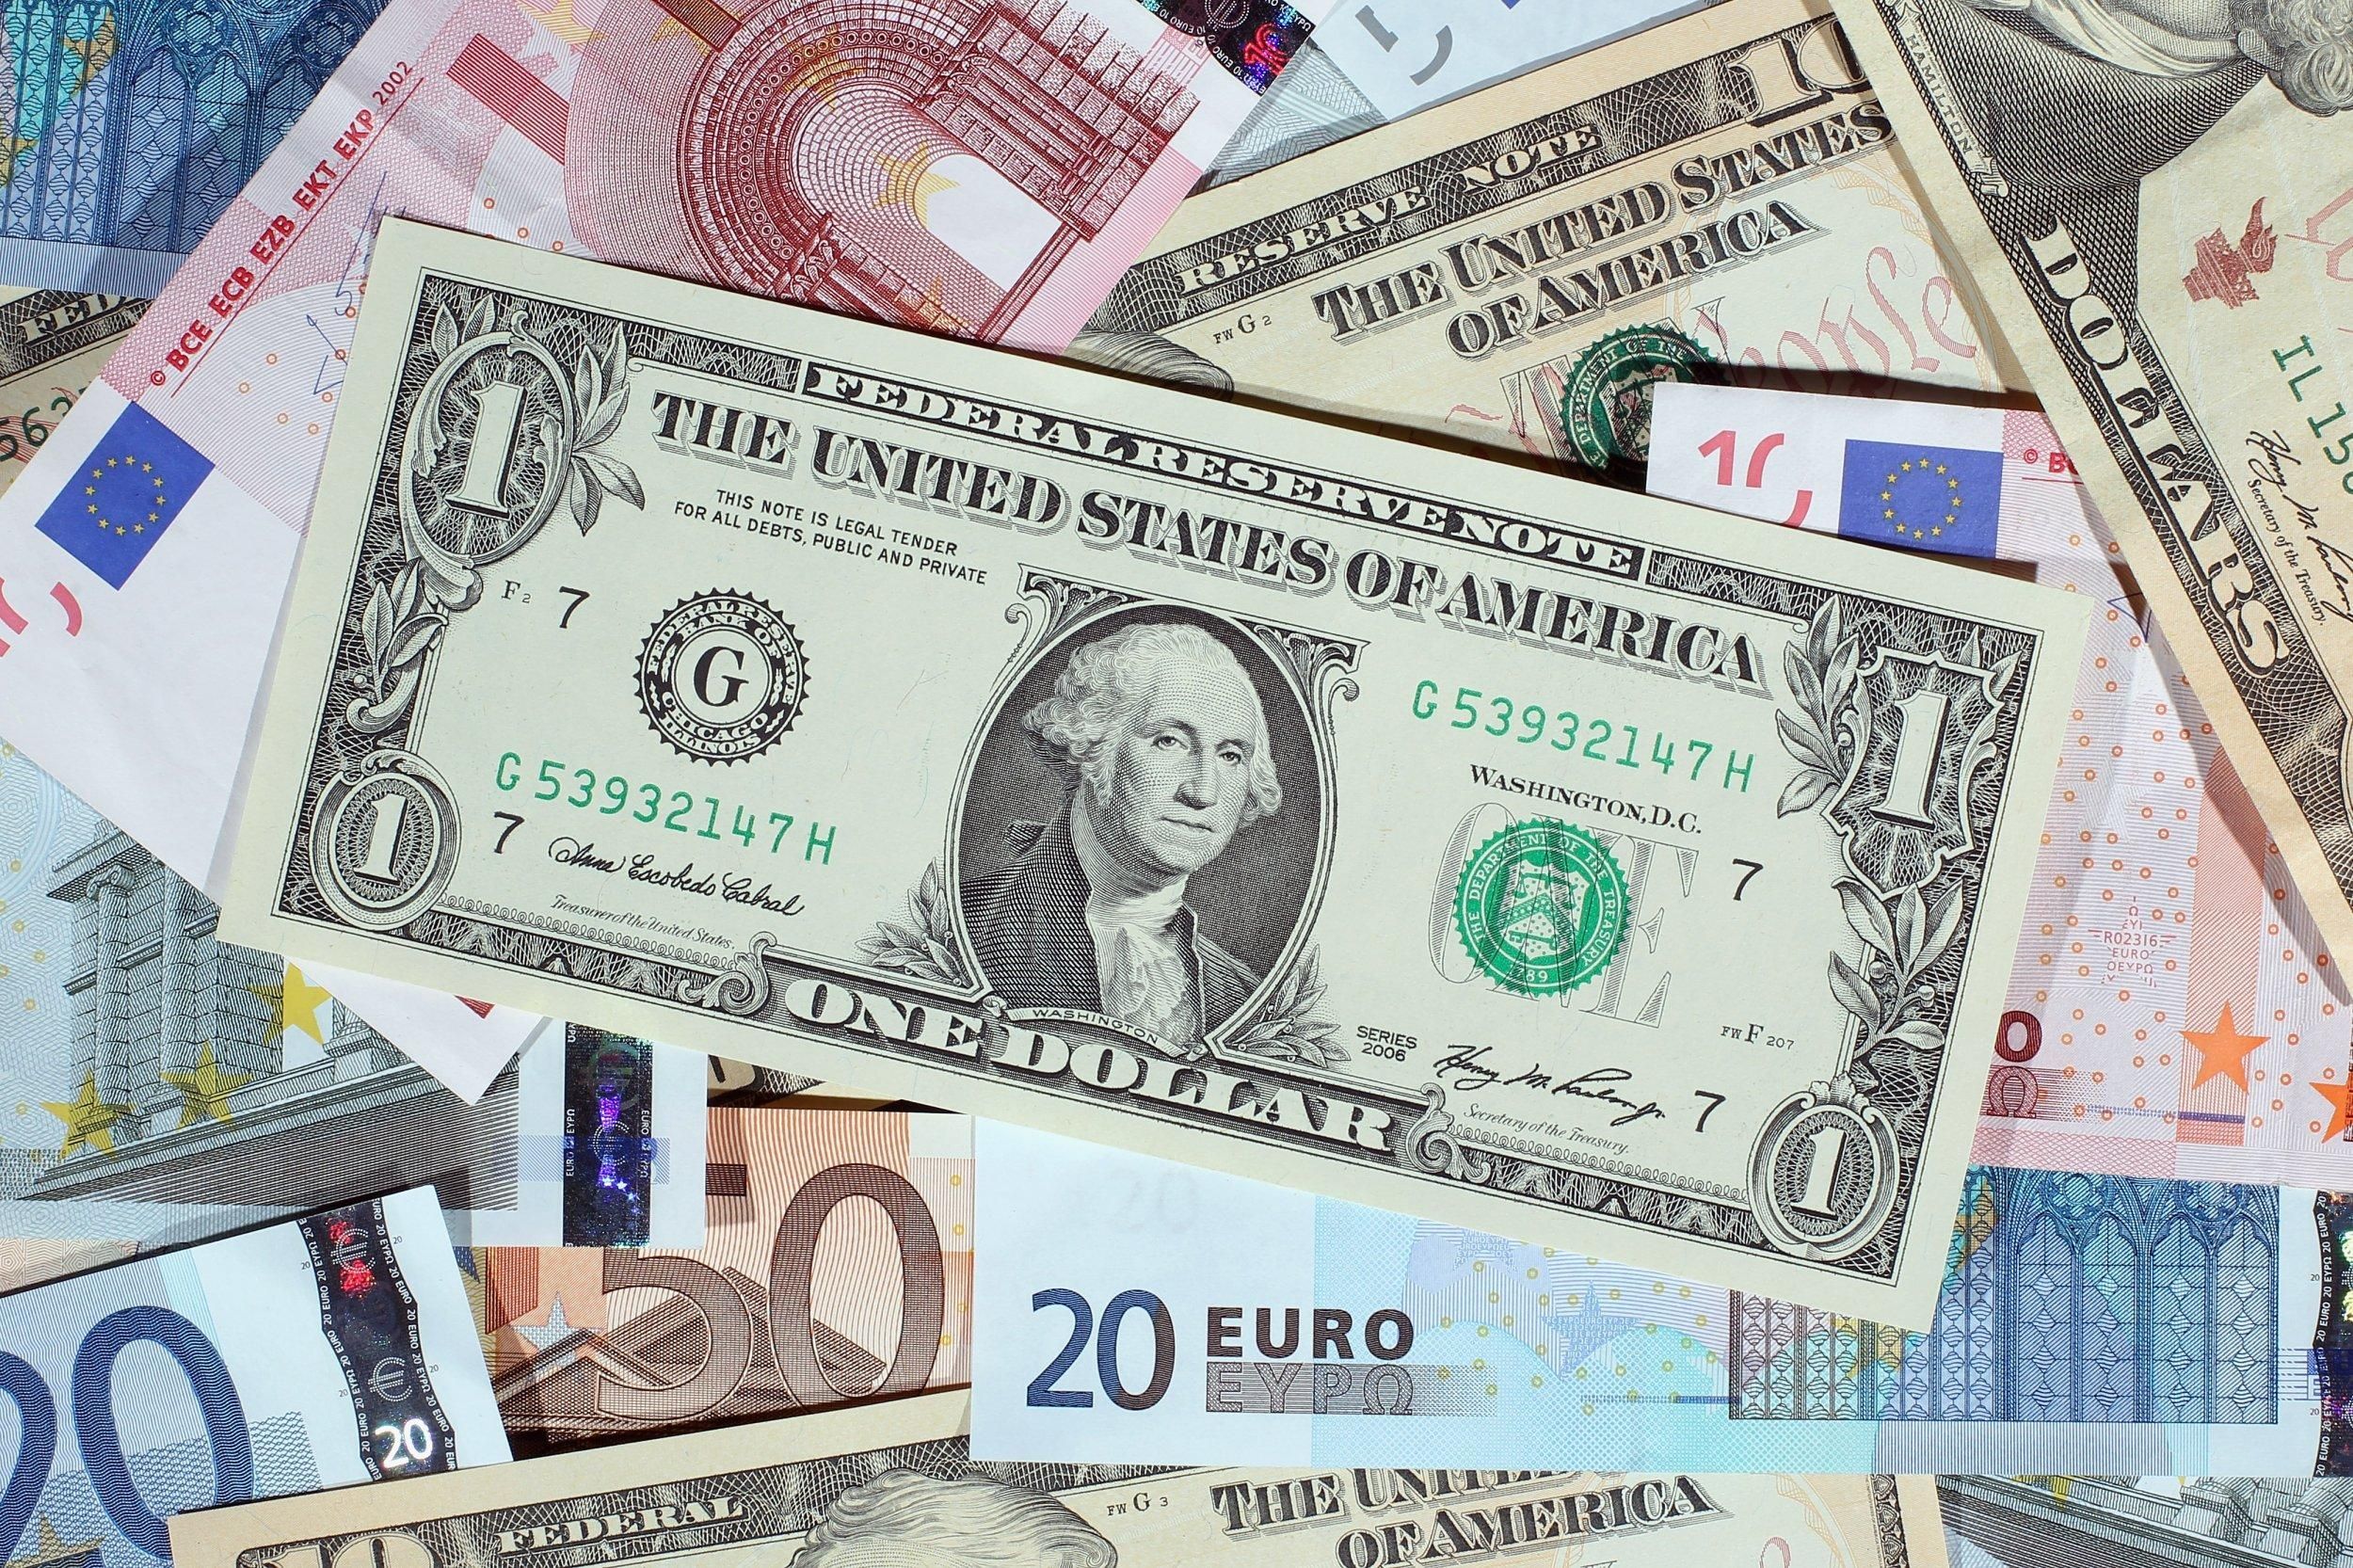 Нацбанк установил новую стоимость евро и злотого  курс валют на 6 июня - Финансы